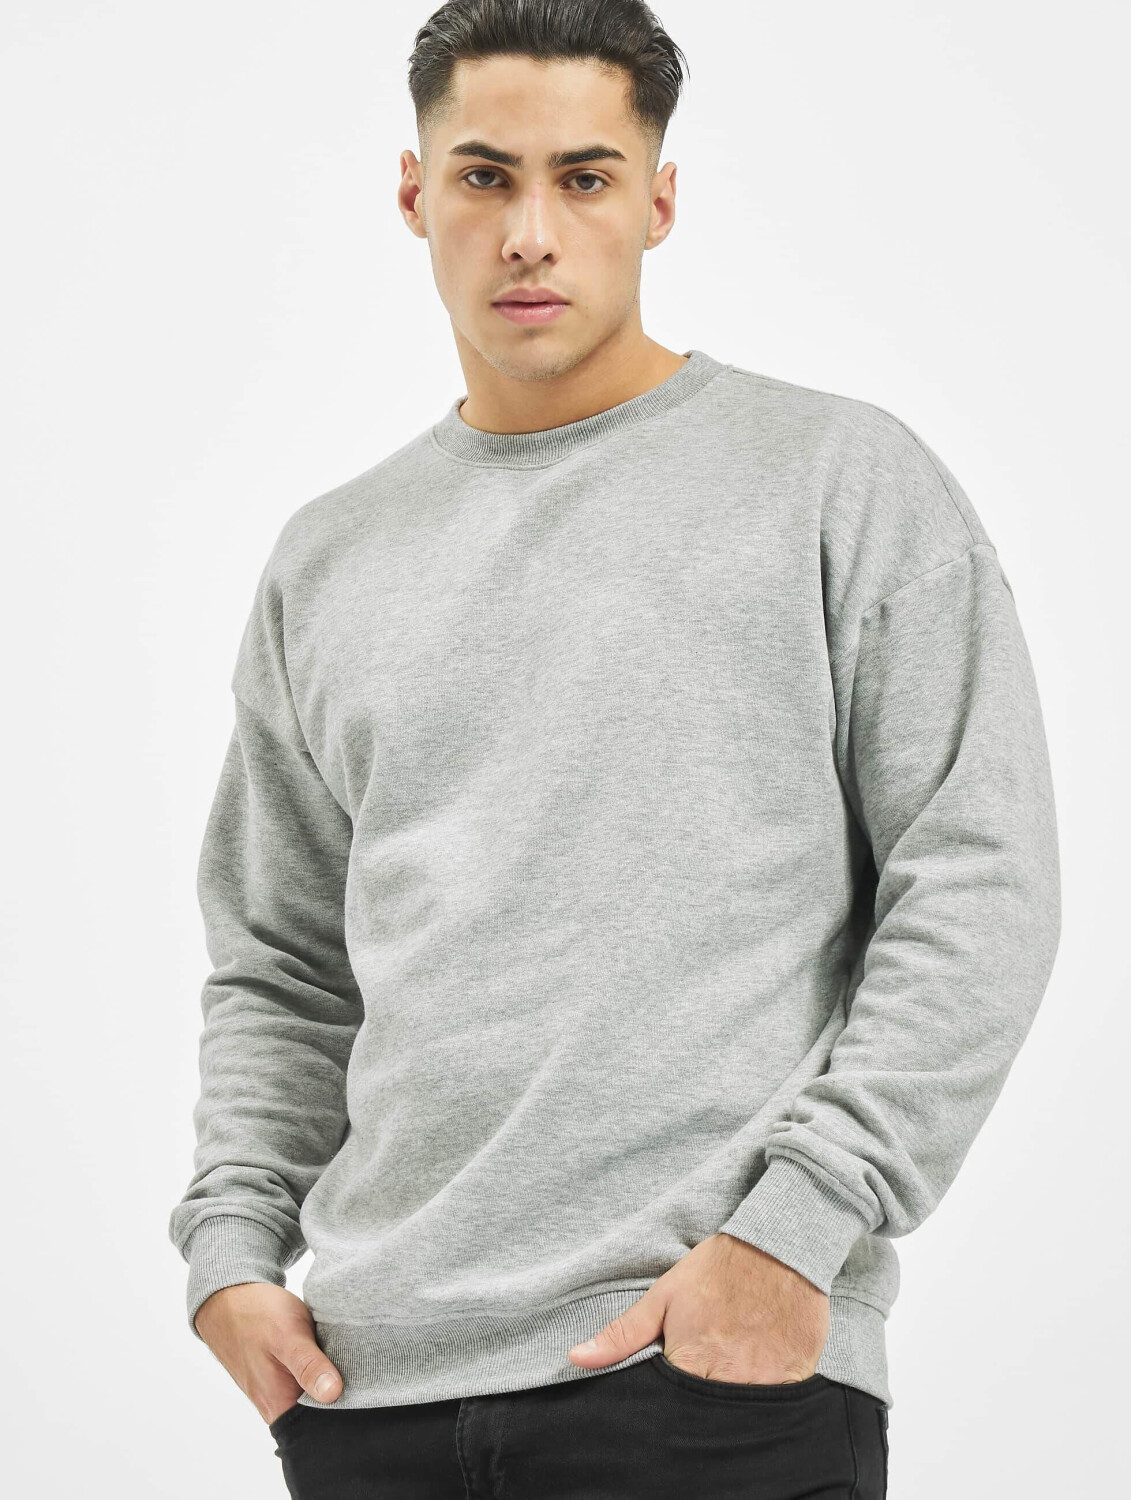 Urban Classics Sweatshirt Camden grey (TB1591GRY) ab 22,99 € |  Preisvergleich bei